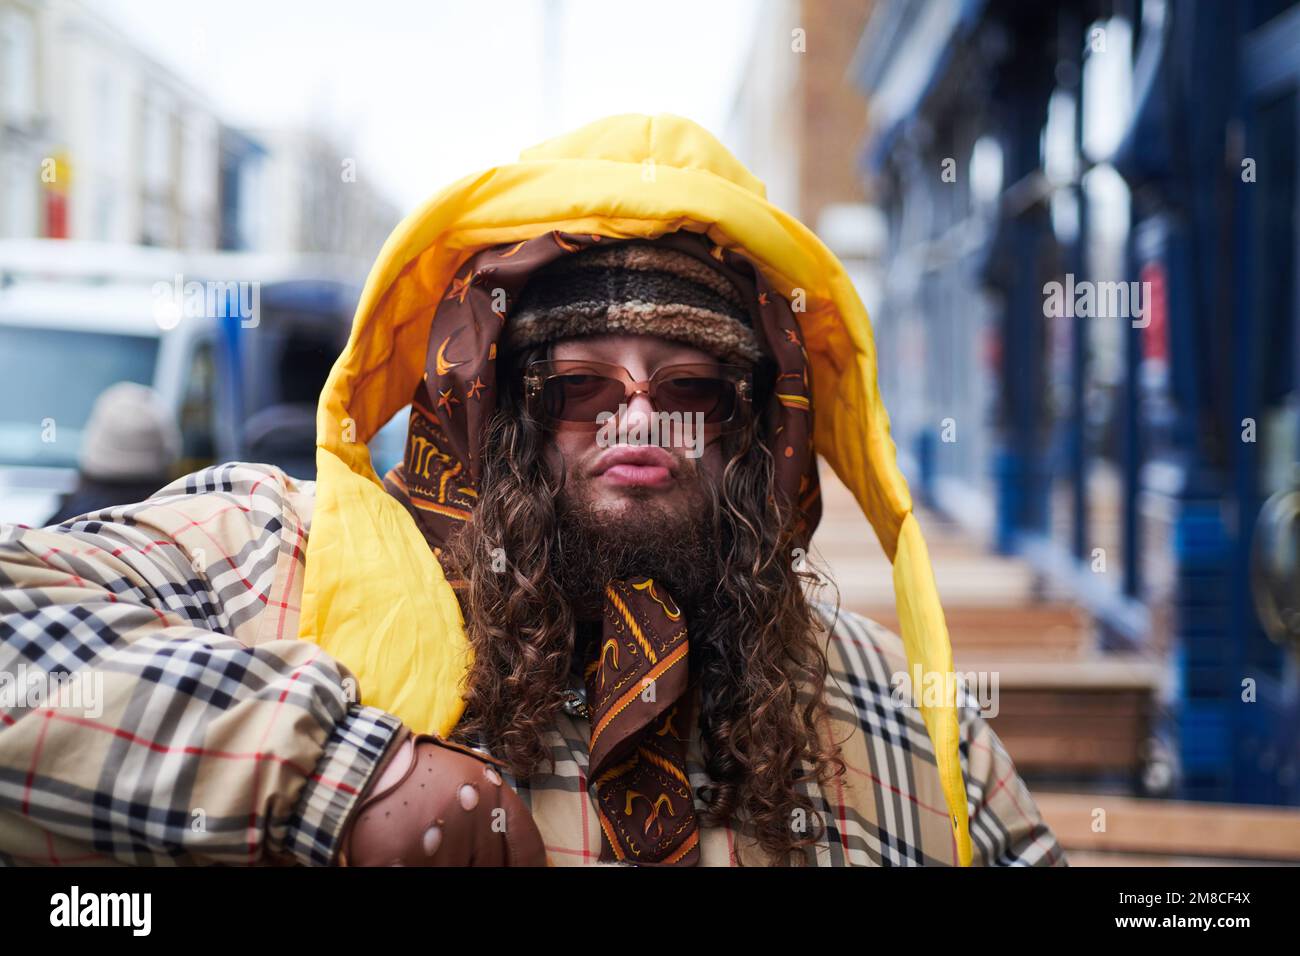 Portrait d'un homme aux couleurs funky dans les rues autour du marché de Portobello à Londres Banque D'Images